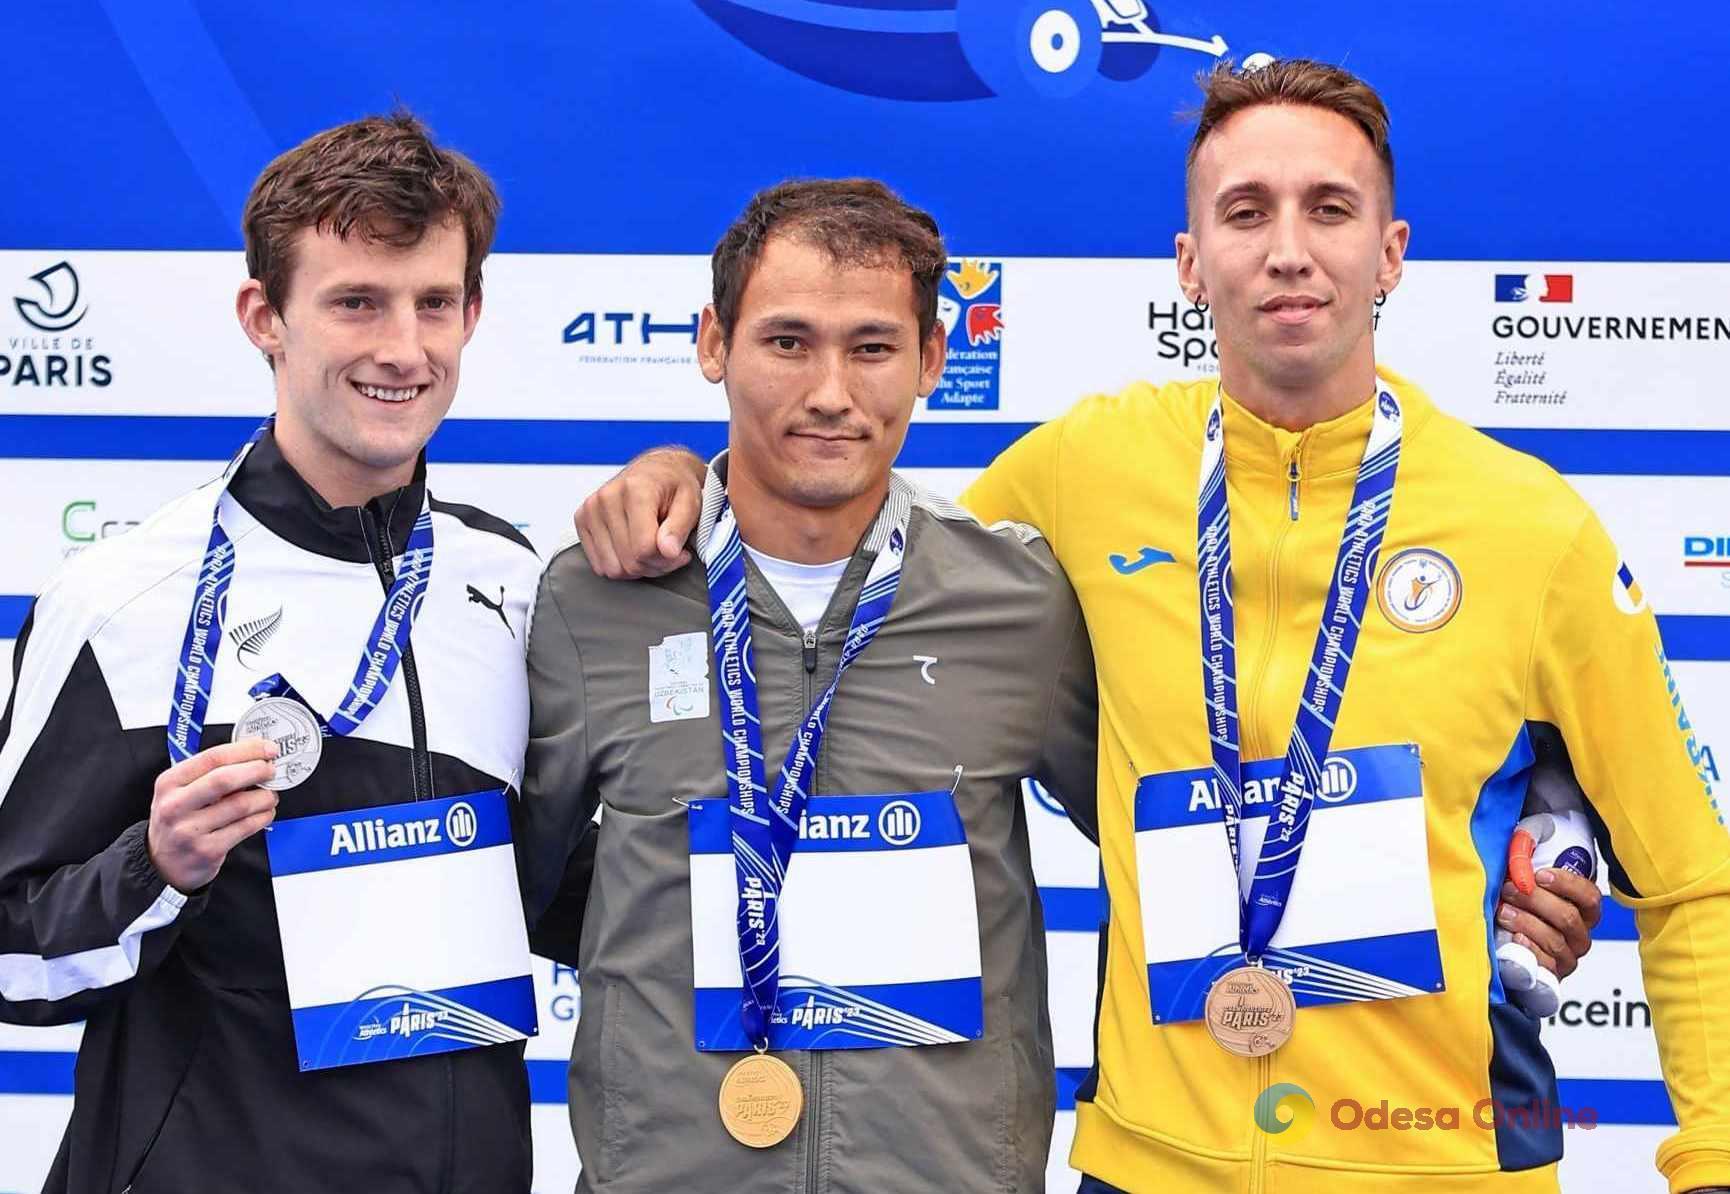 Одеський параатлет здобув медаль чемпіонату світу та ліцензію на Паралімпійські ігри